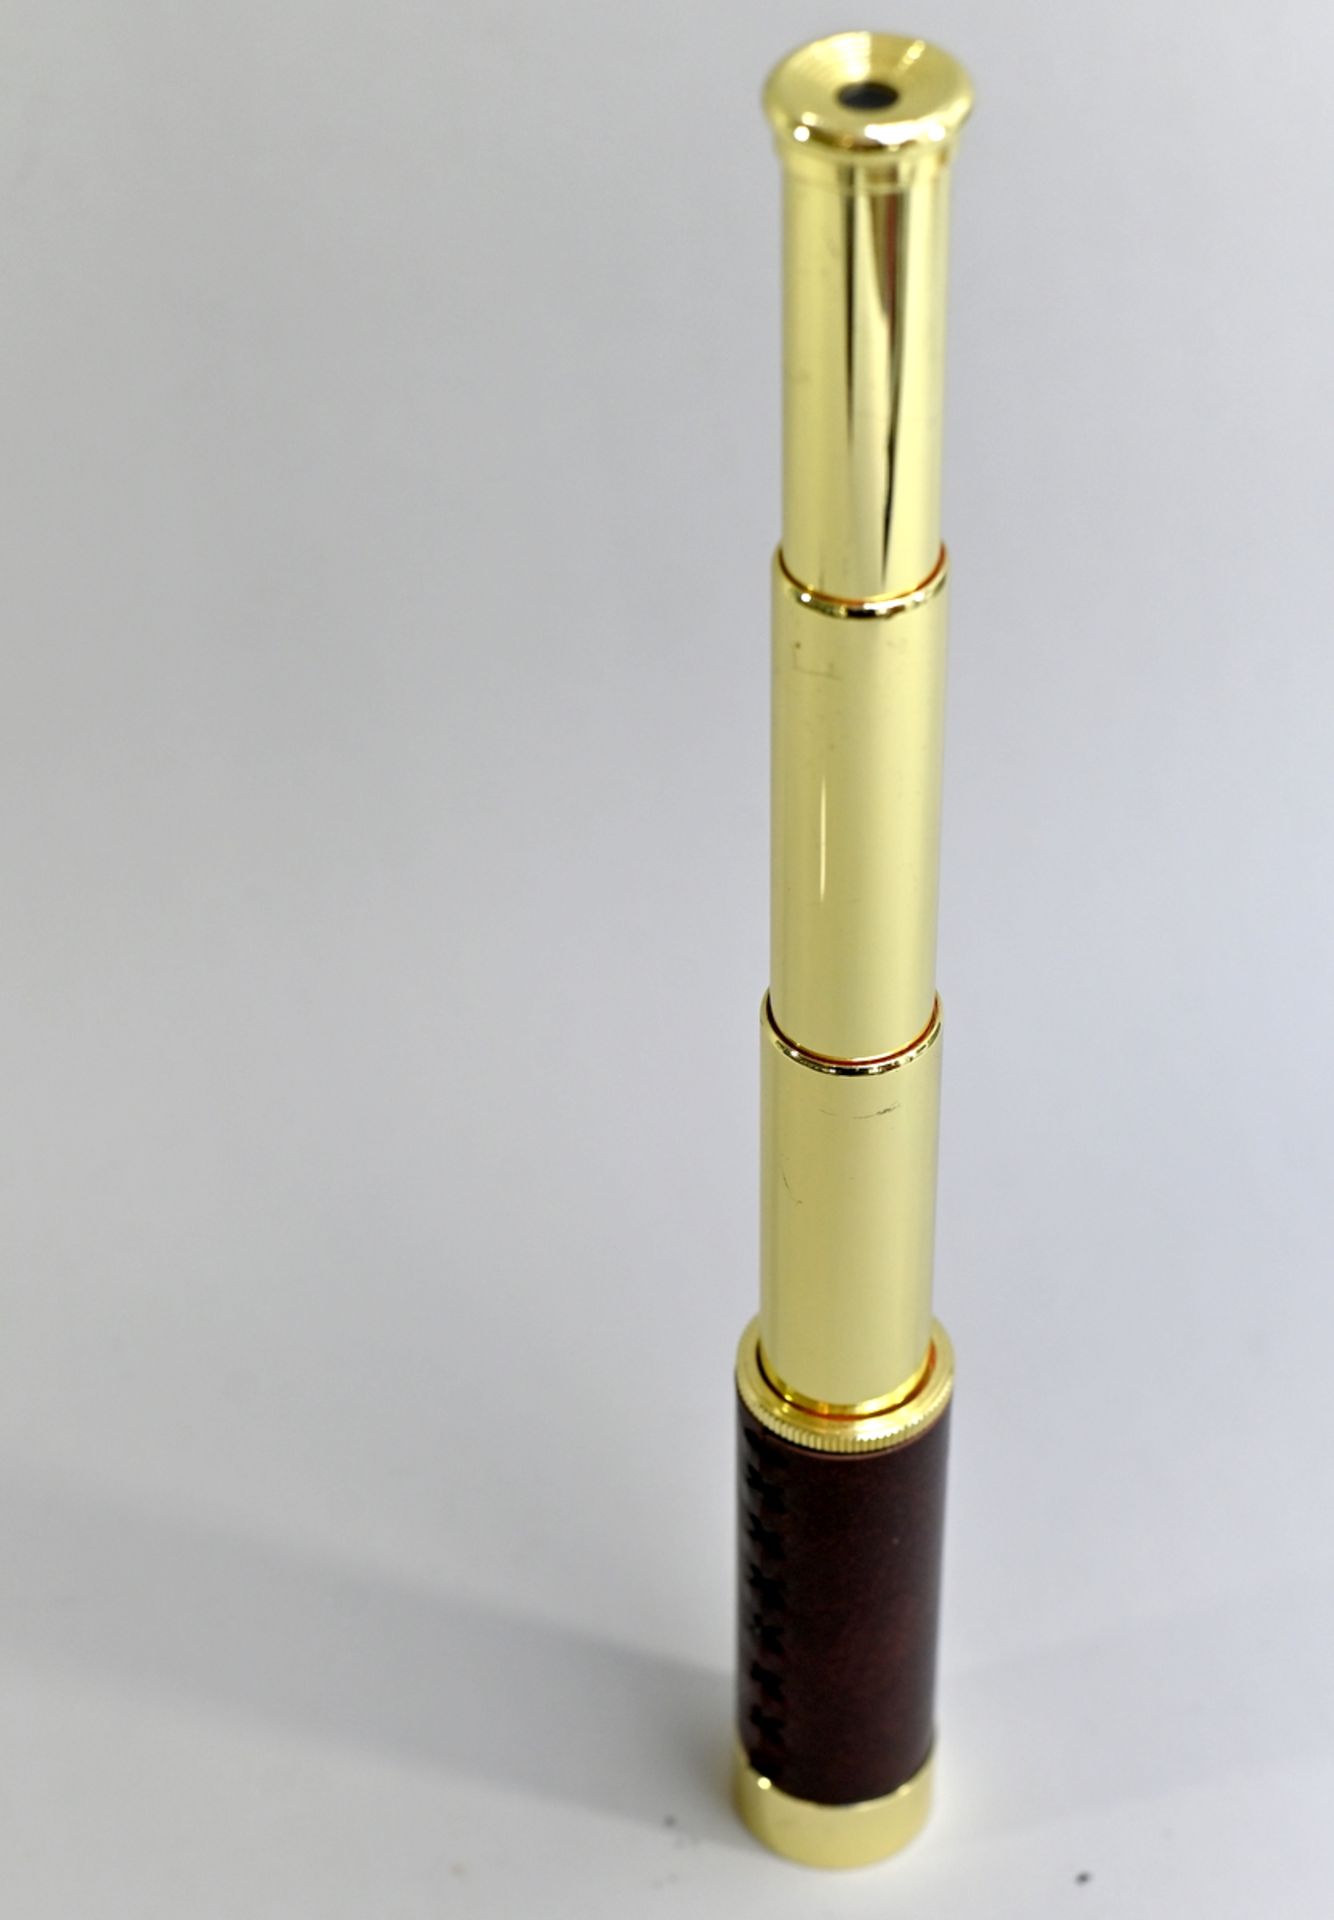 Tasko- Taschenteleskop Speciality 25x30, ausziehbar auf 34cm, guter Zustand - Bild 3 aus 3